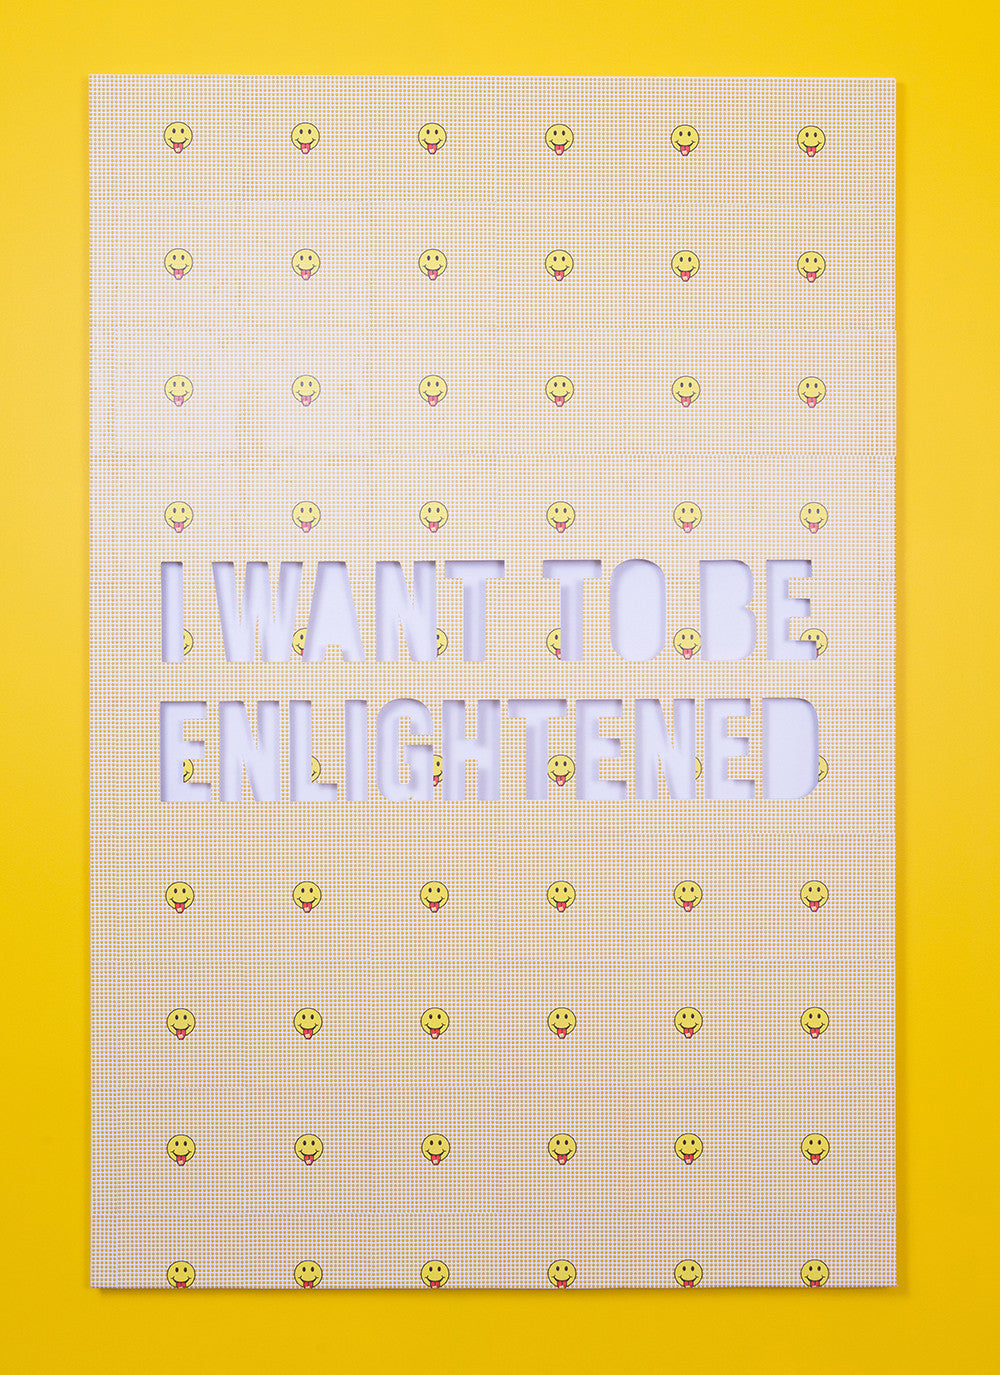 Jonathan Rosen, "Enlightened"